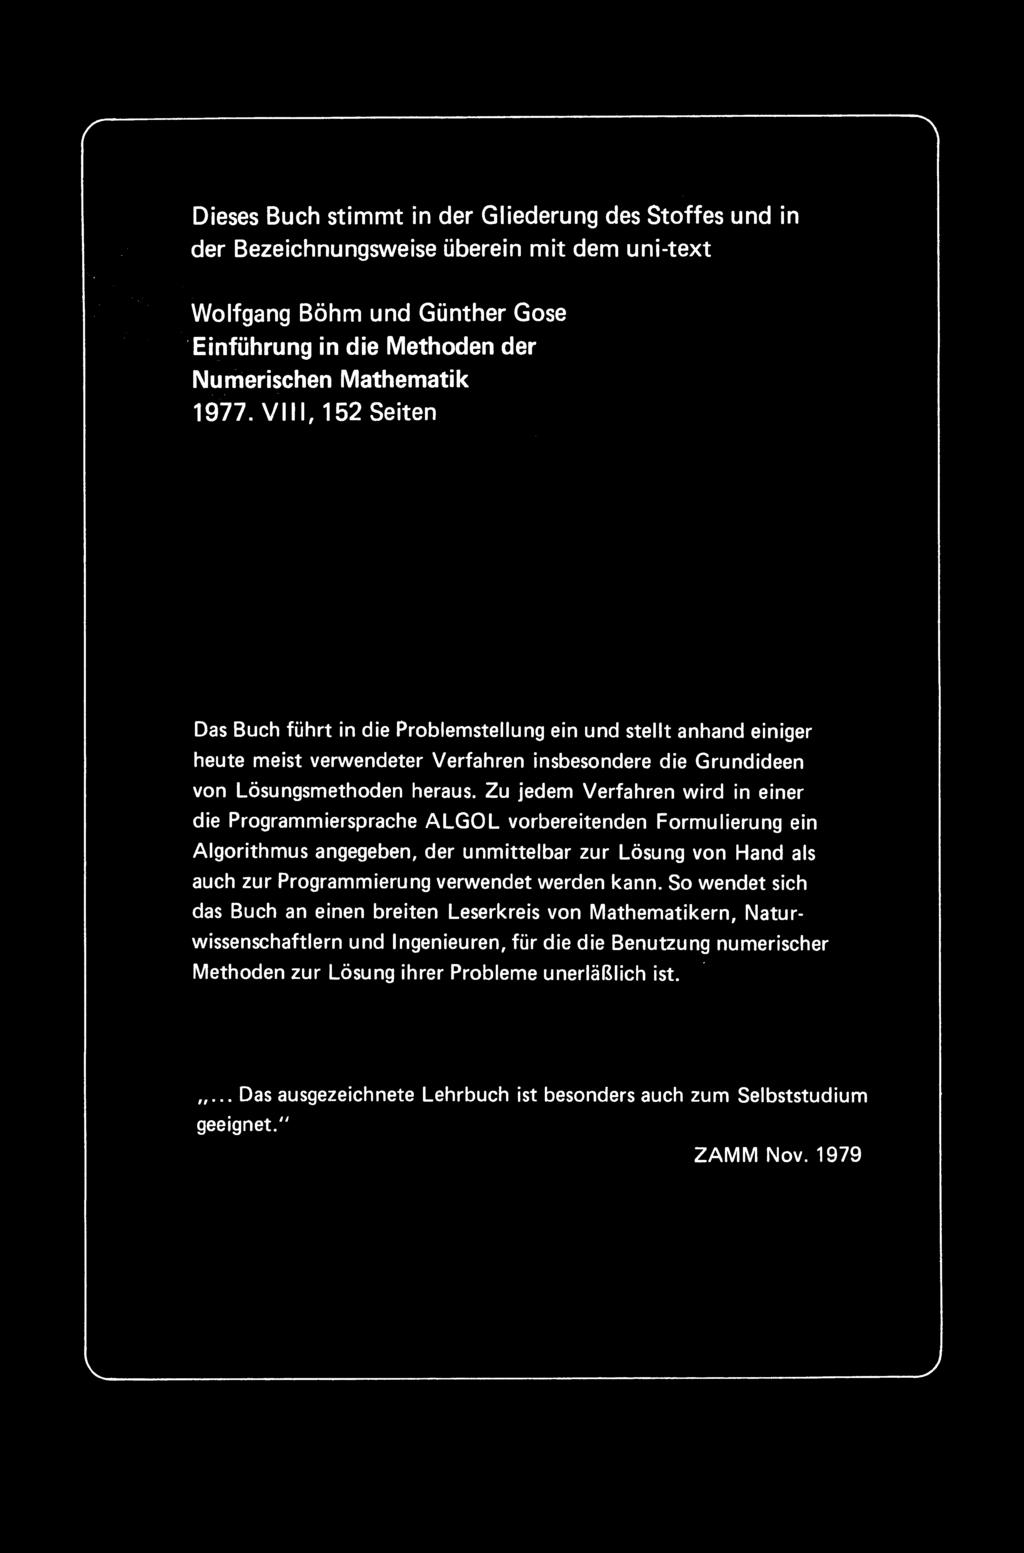 Dieses Buch stimmt in der Gliederung des Stoffes und in der Bezeichnungsweise uberein mit dem uni-text Wolfgang Bohm und Gunther Gose. Einfuhrung in die Methoden der Numerischen Mathematik 1977.